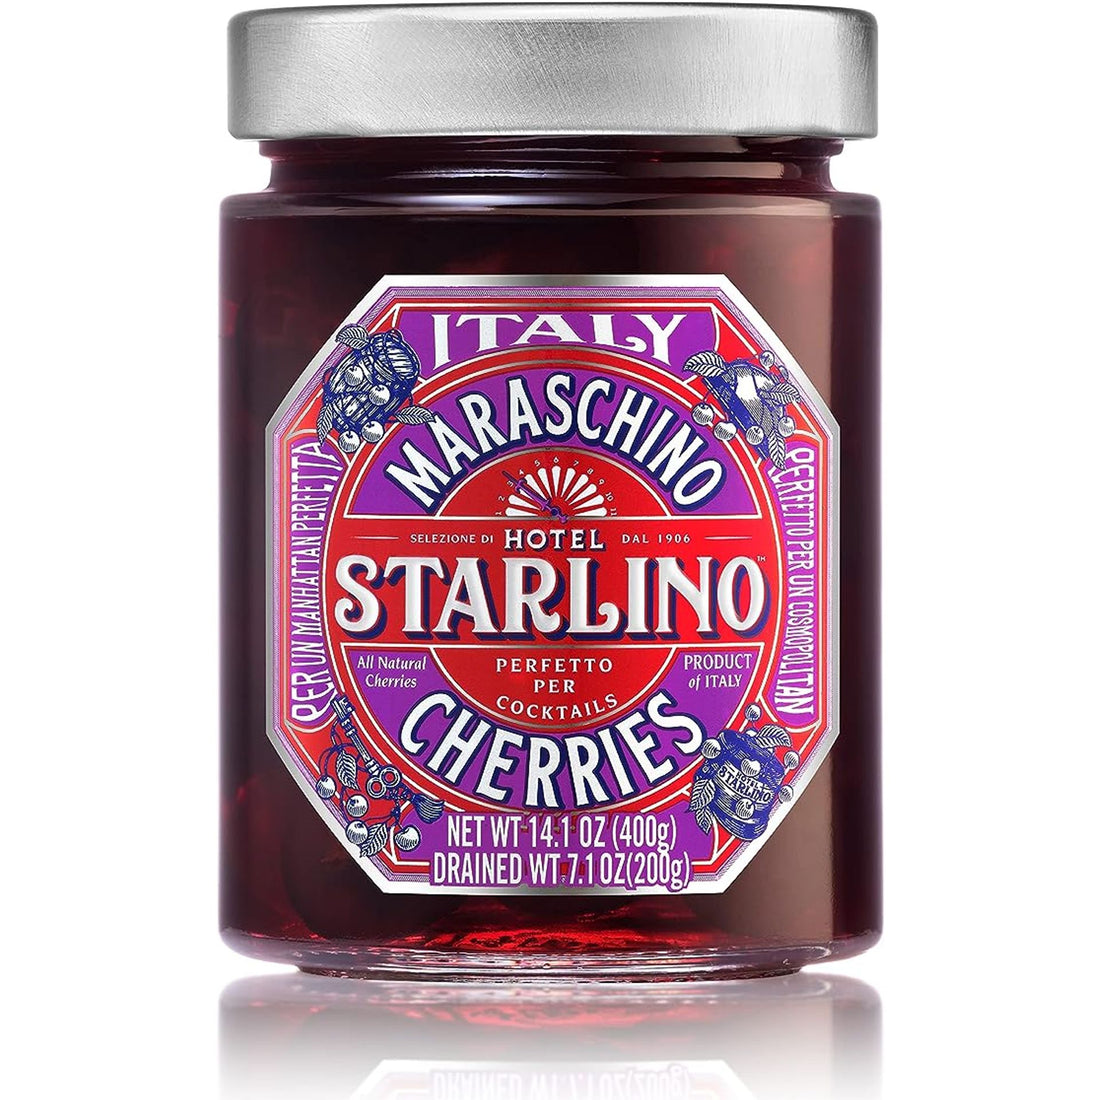 Starlino Cherries